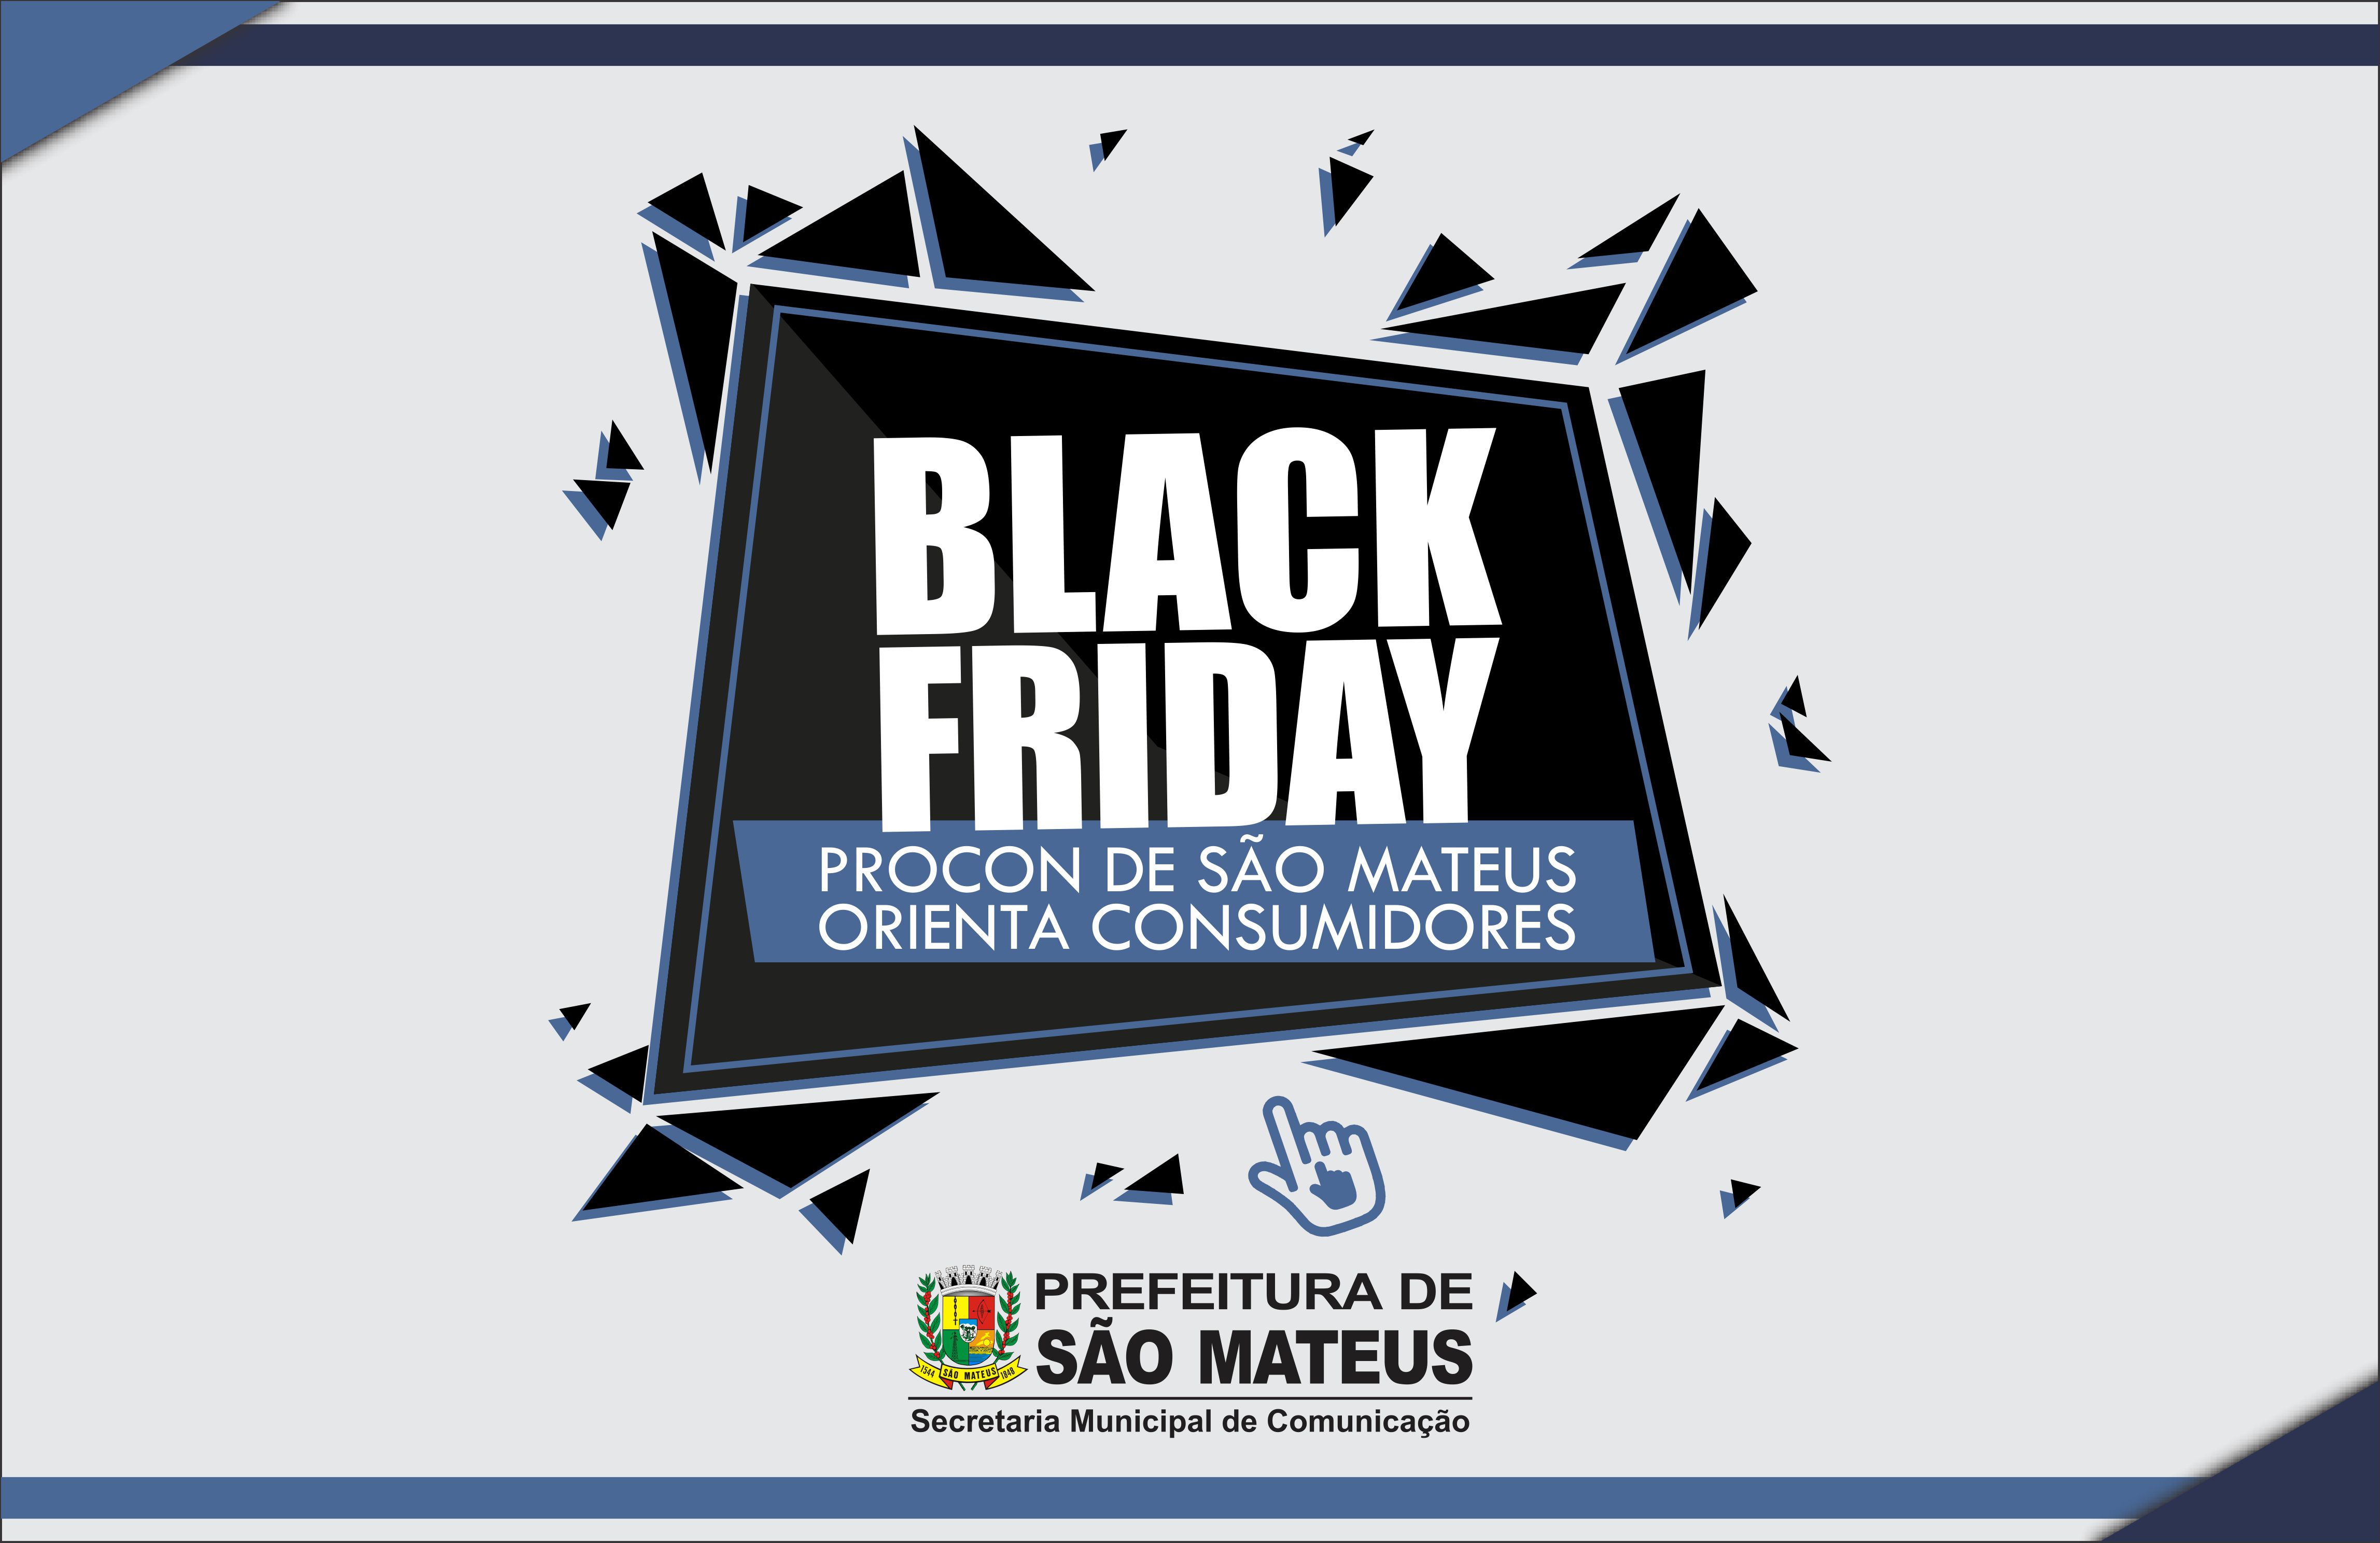 Black Friday: Procon de São Mateus orienta consumidores